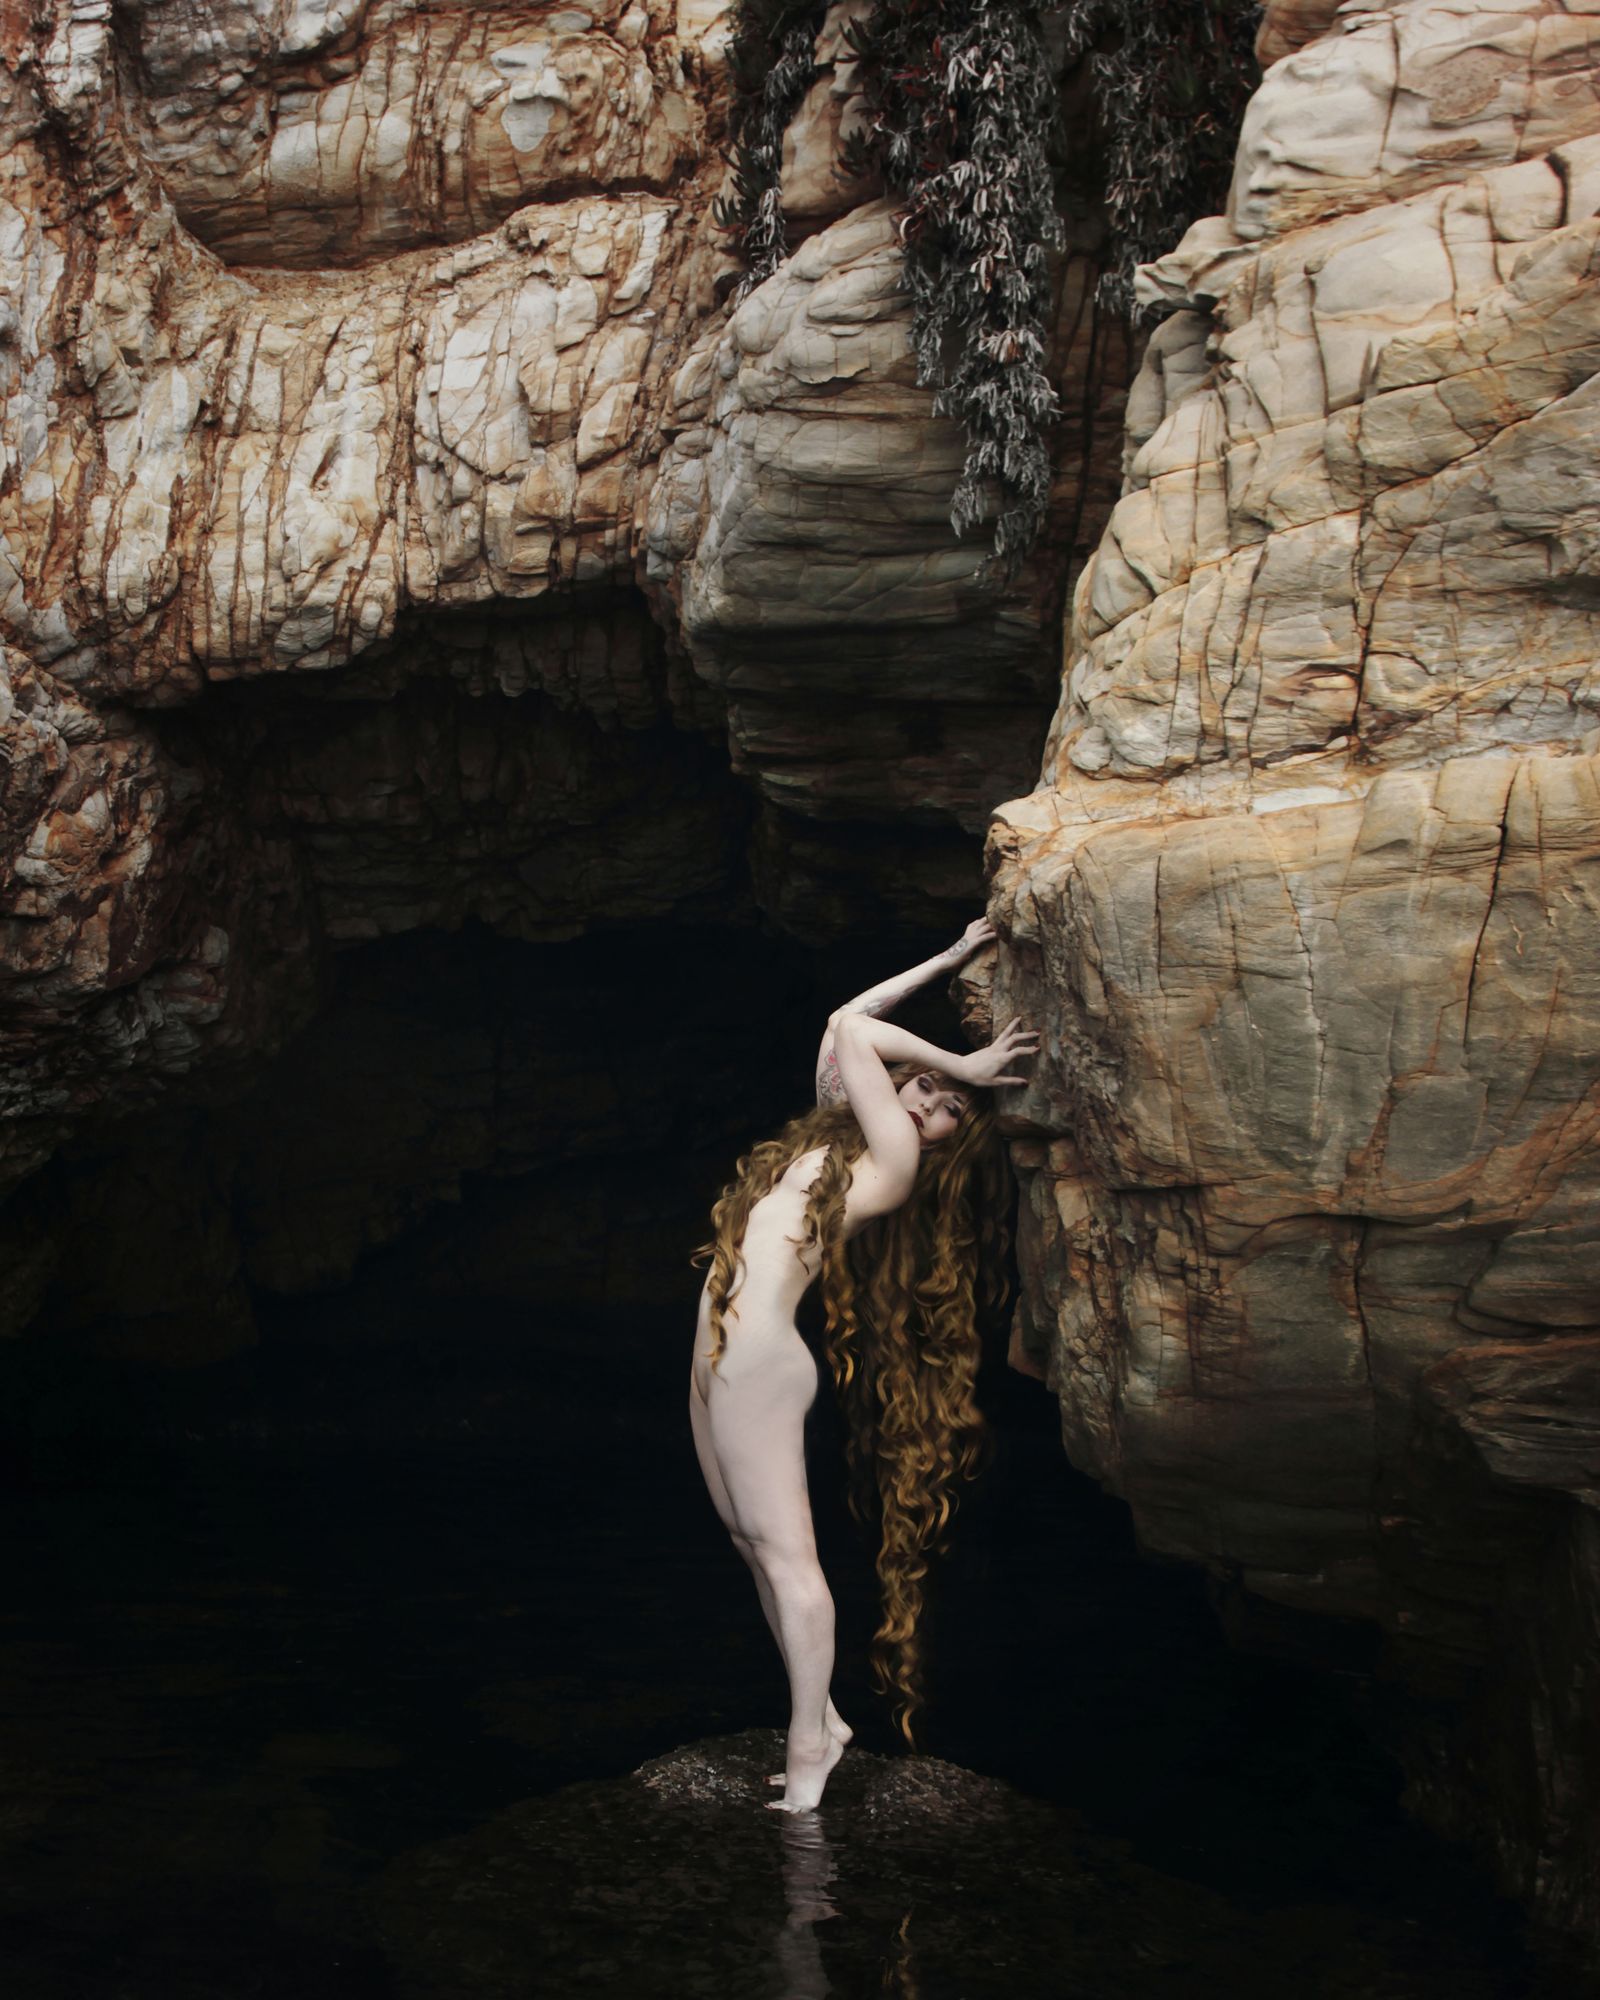 © Natalia Kovachevski - Image from the The Myth of Femininity photography project